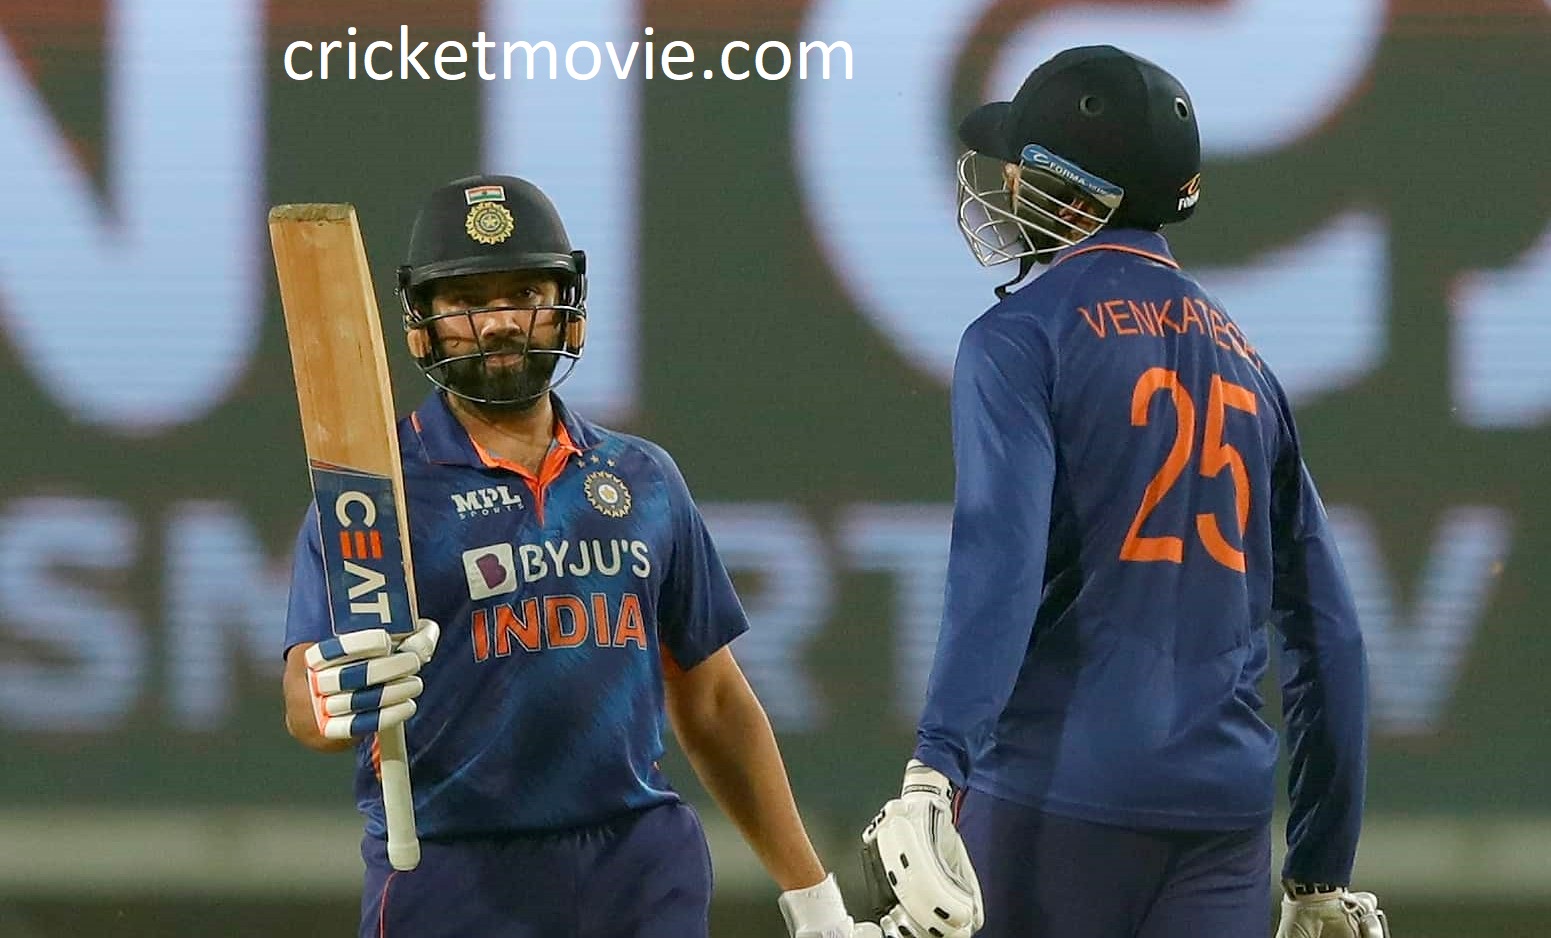 India won Ranchi T20 by 7 wickets-cricketmovie.com